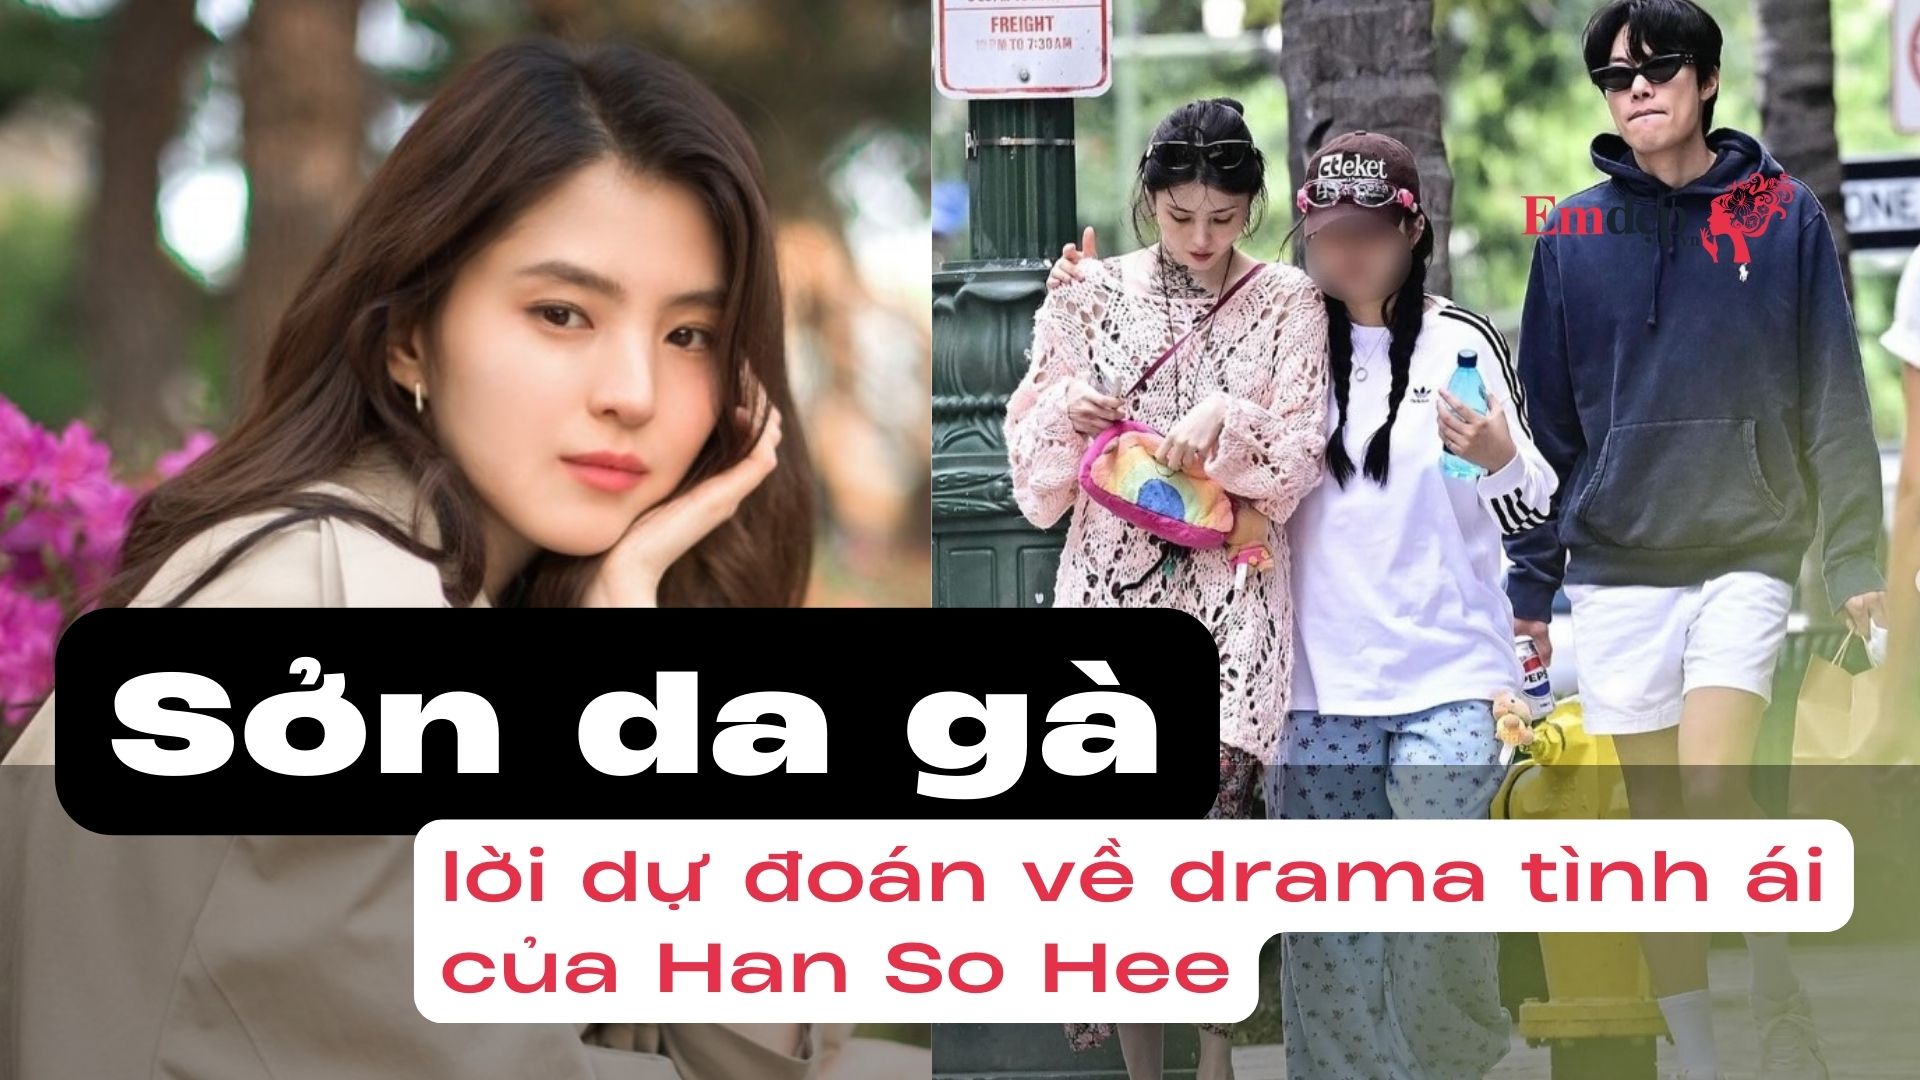 Sởn da gà: lời dự đoán về drama tình ái của Han So Hee